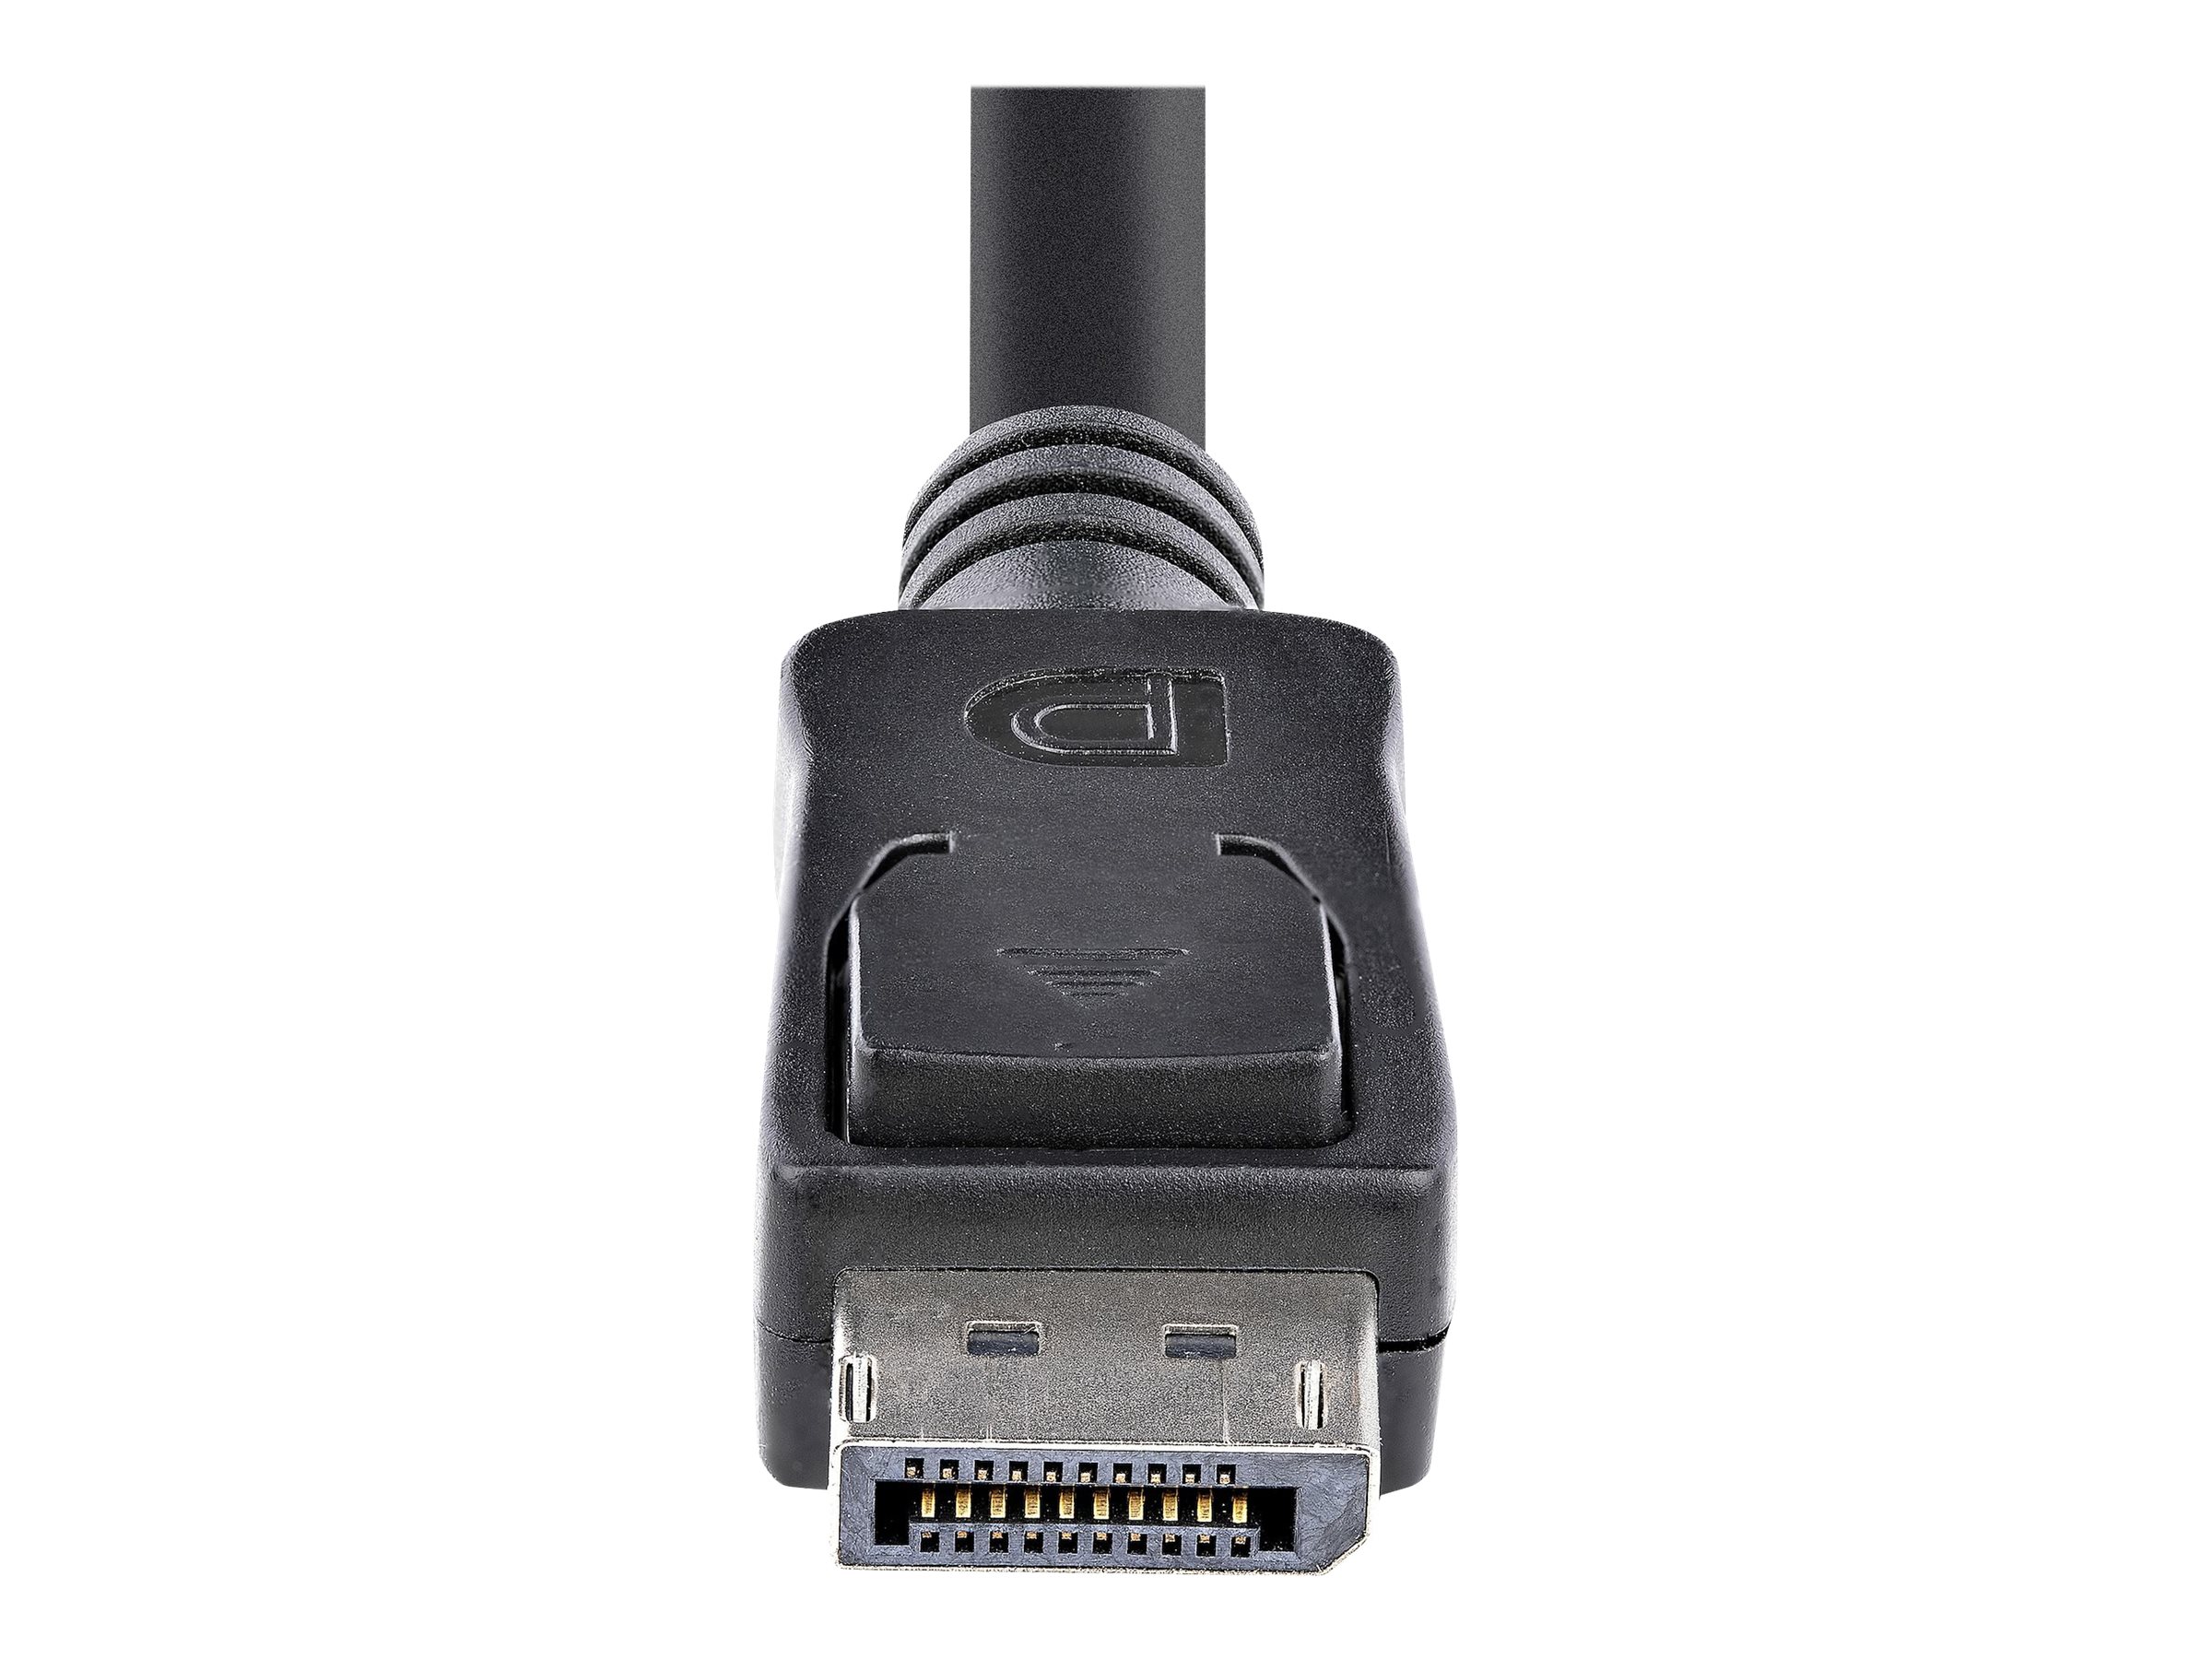 StarTech.com 3m DisplayPort 1.2 Kabel mit Verriegelung (Stecker/Stecker)